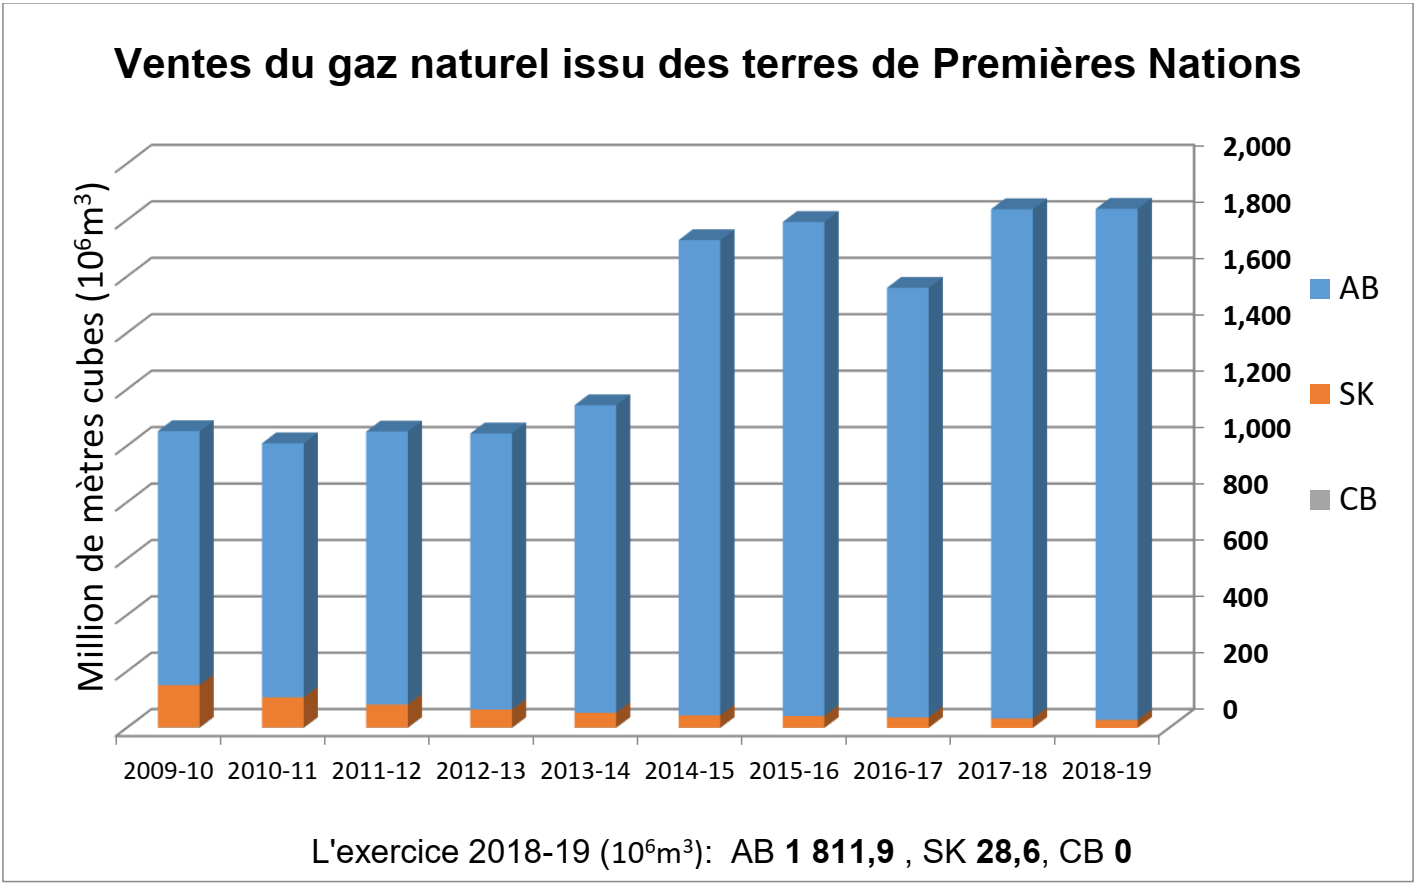 Ventes de gaz naturel sur les terres des Premières Nations